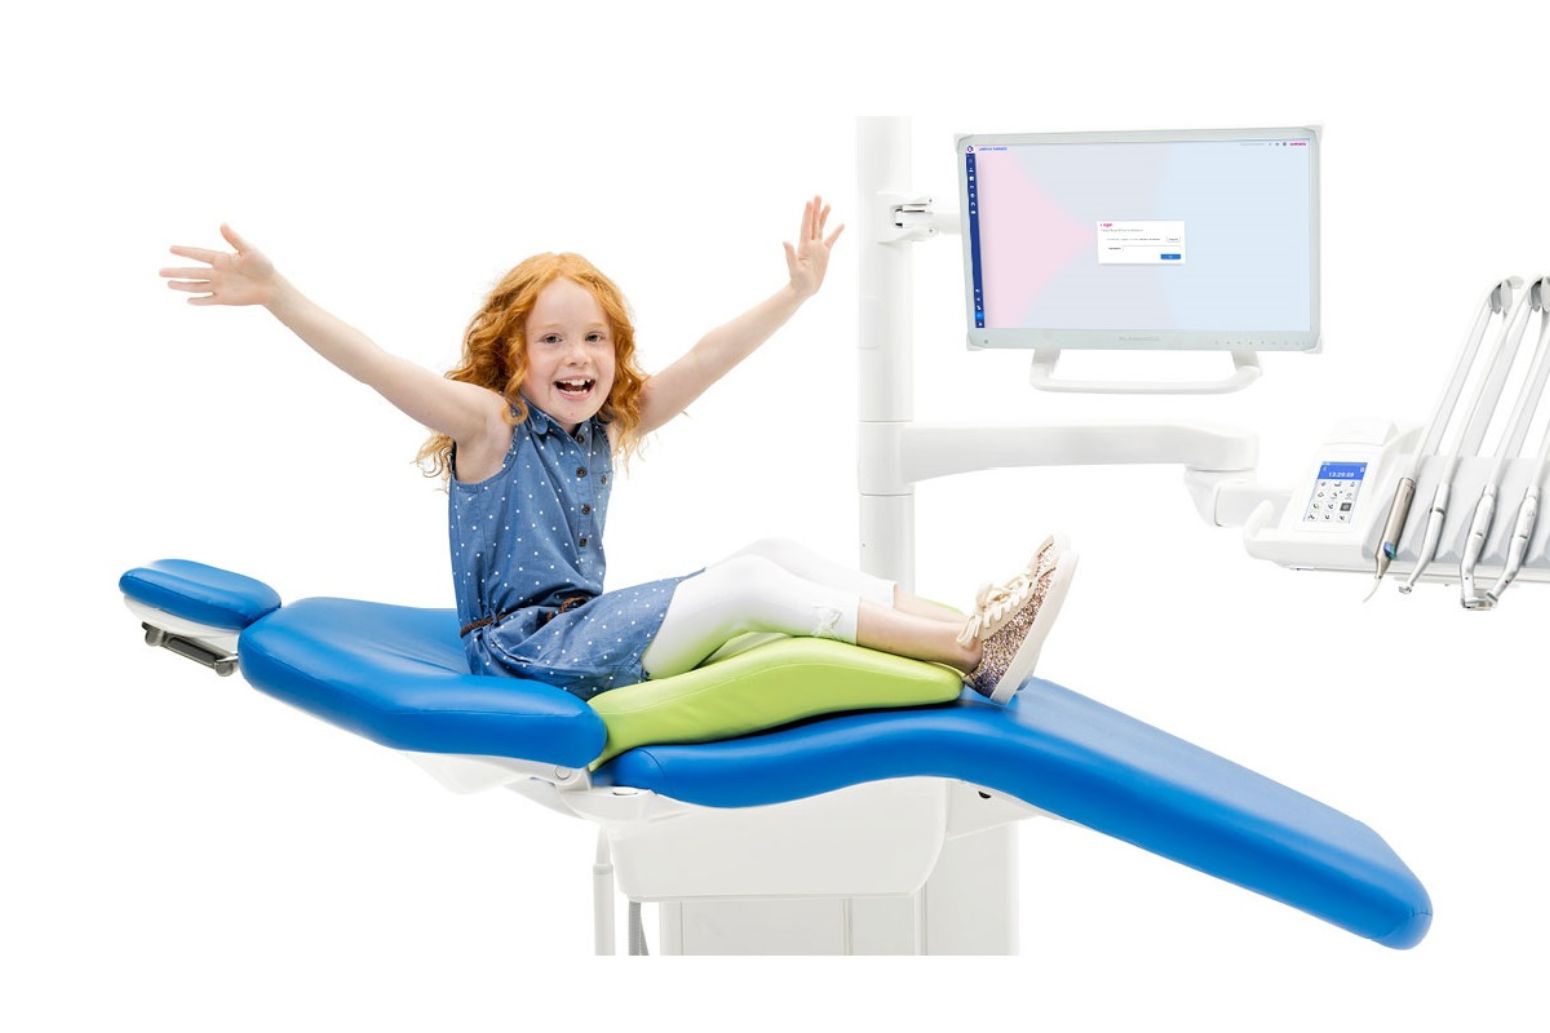 Glad pige sidder med armene udstrakt på en tandlæge unit og hun har en pude under sig, så hun sidder ergonomisk korrekt